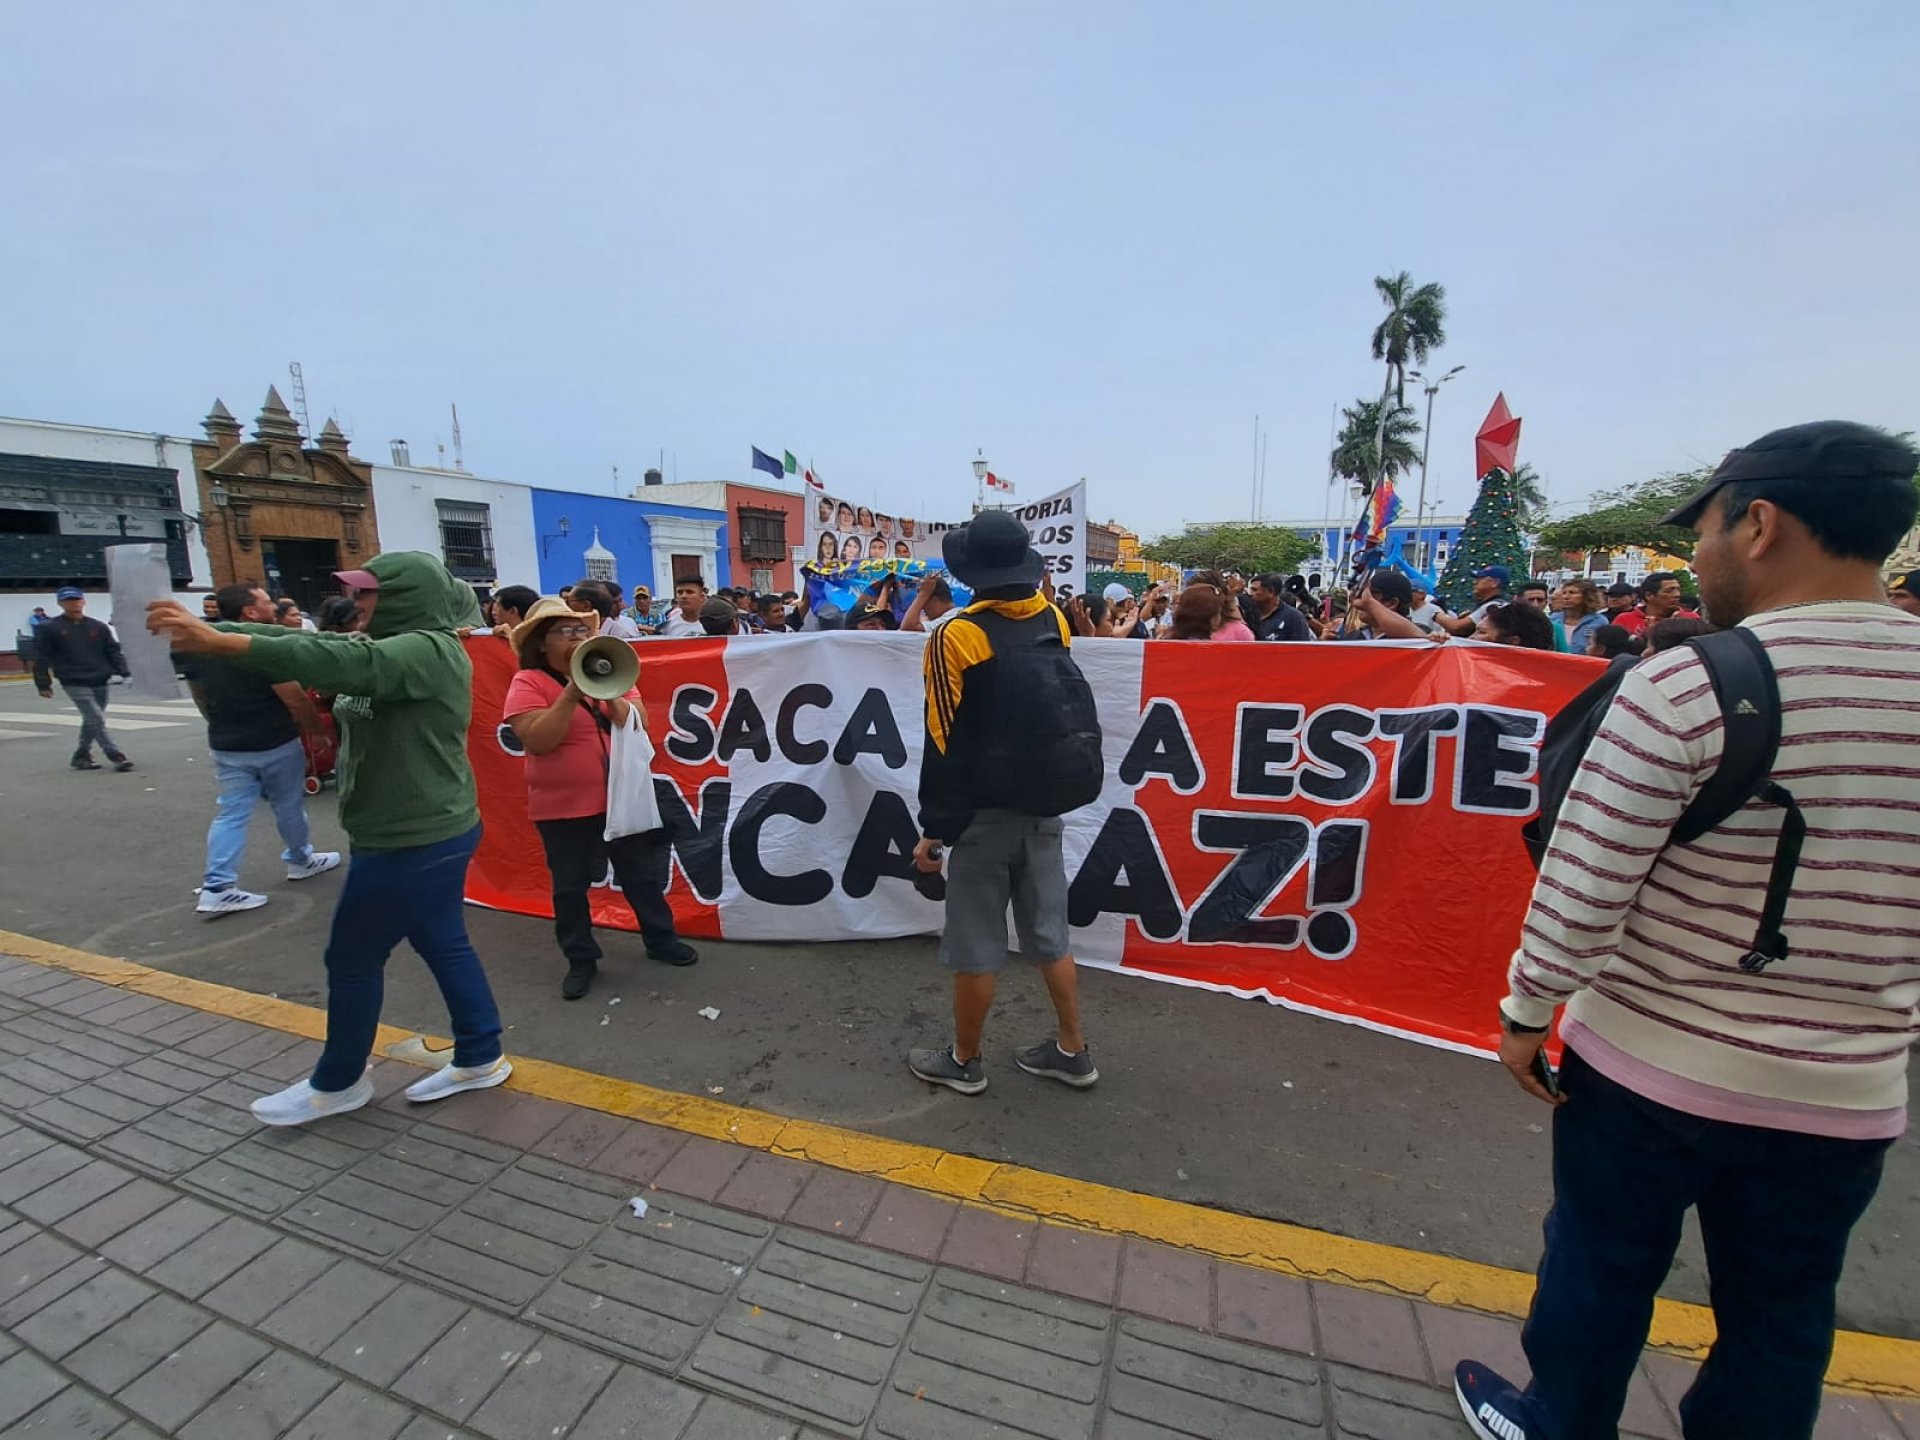 Exregidor asegura que alcalde de Trujillo se puede aferrar al cargo hasta febrero del otro ao